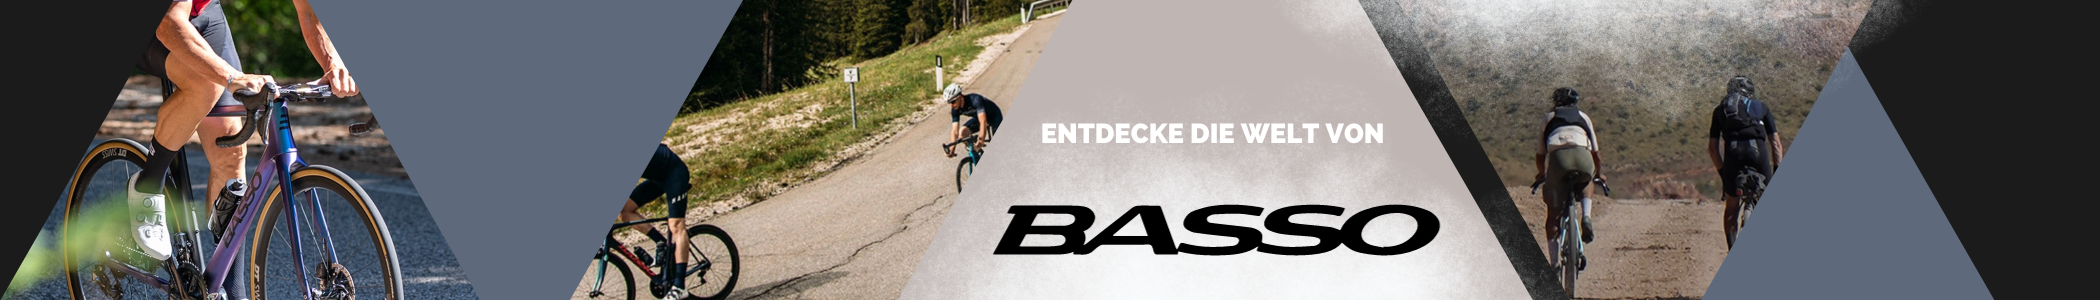 Entdecke die Markenwelt von Basso!